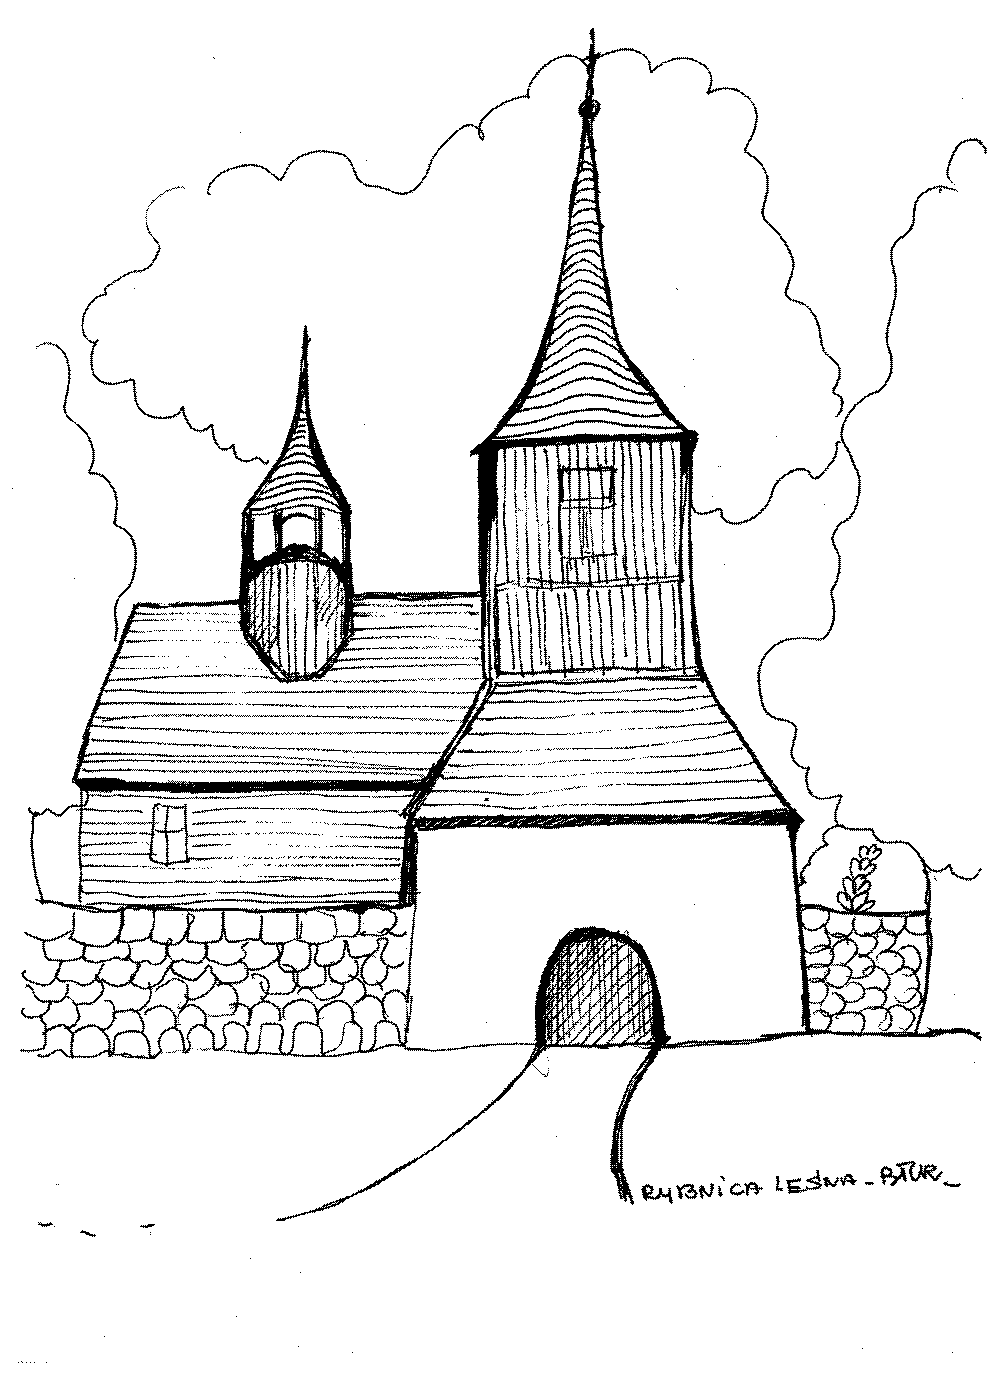 kościół Rybnica Leśna